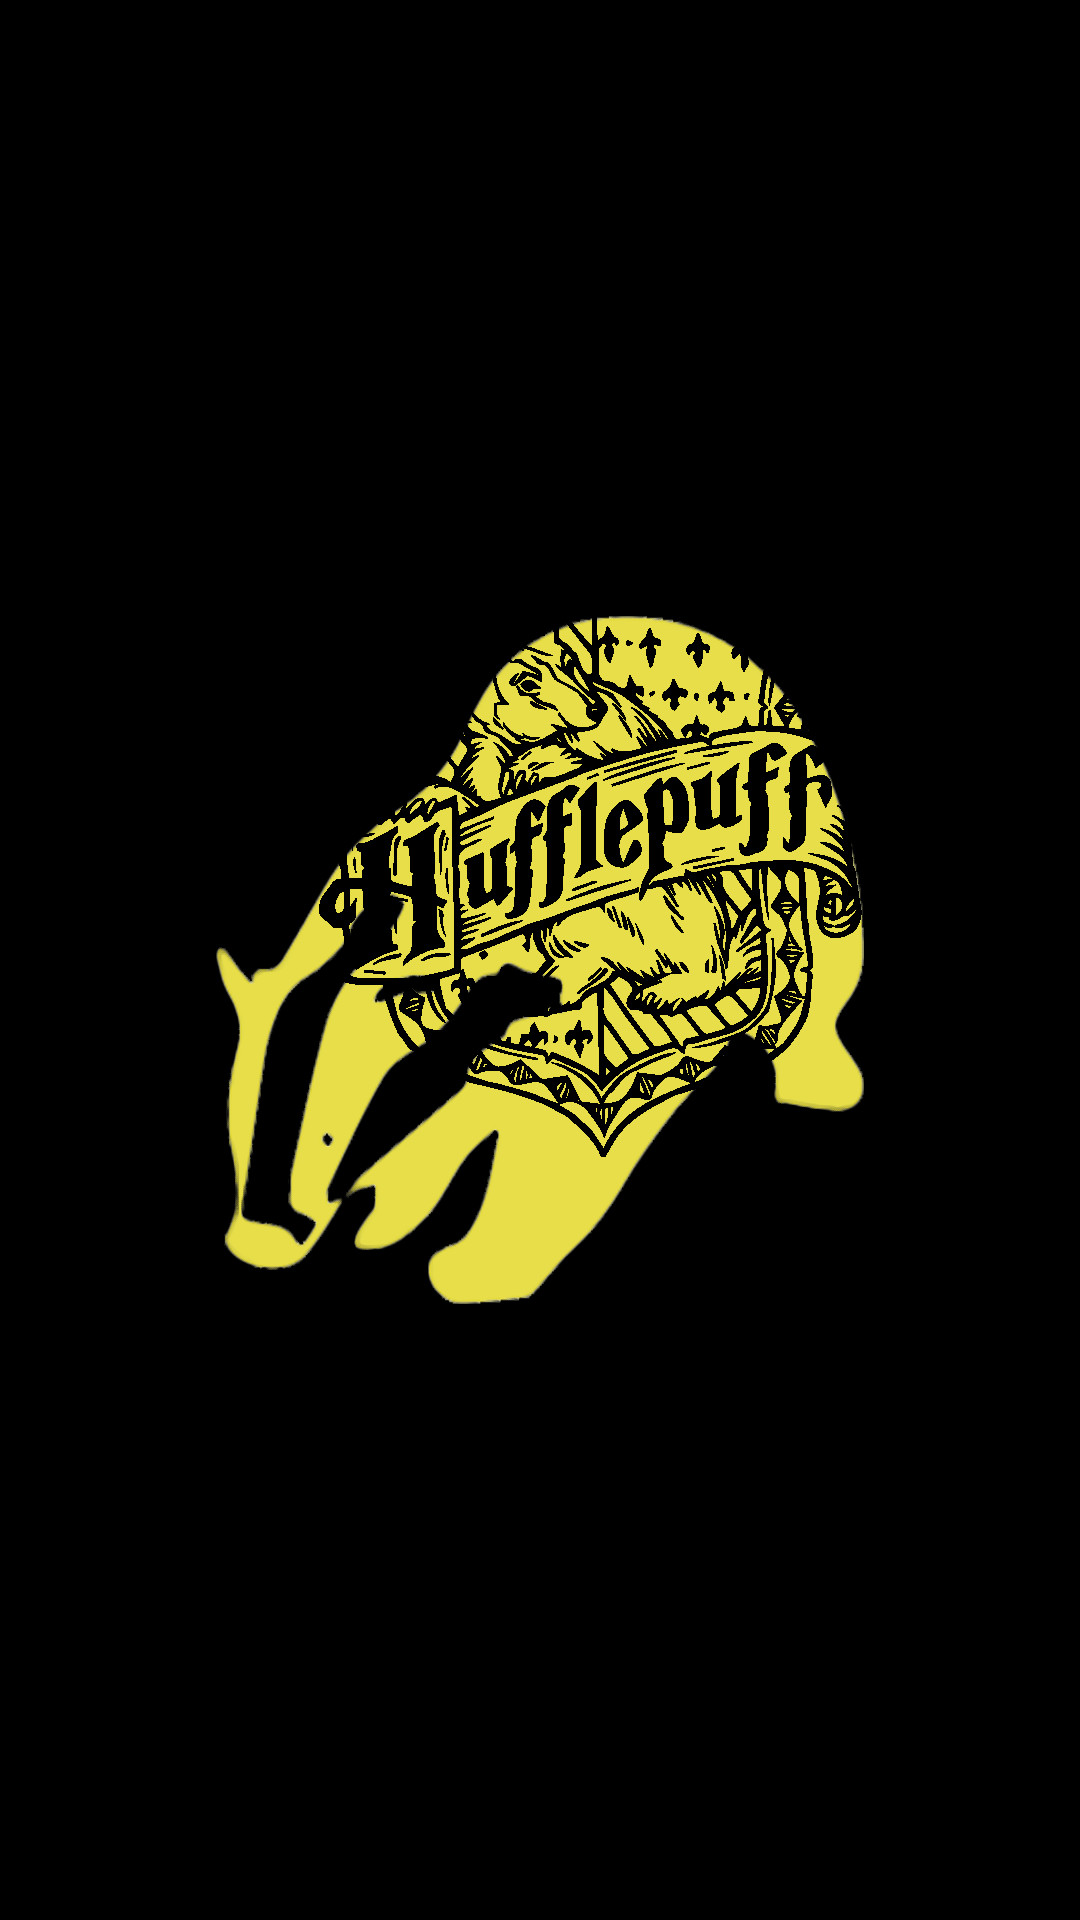 Hufflepuff Quidditch Texture by Robyn-Pratt on DeviantArt